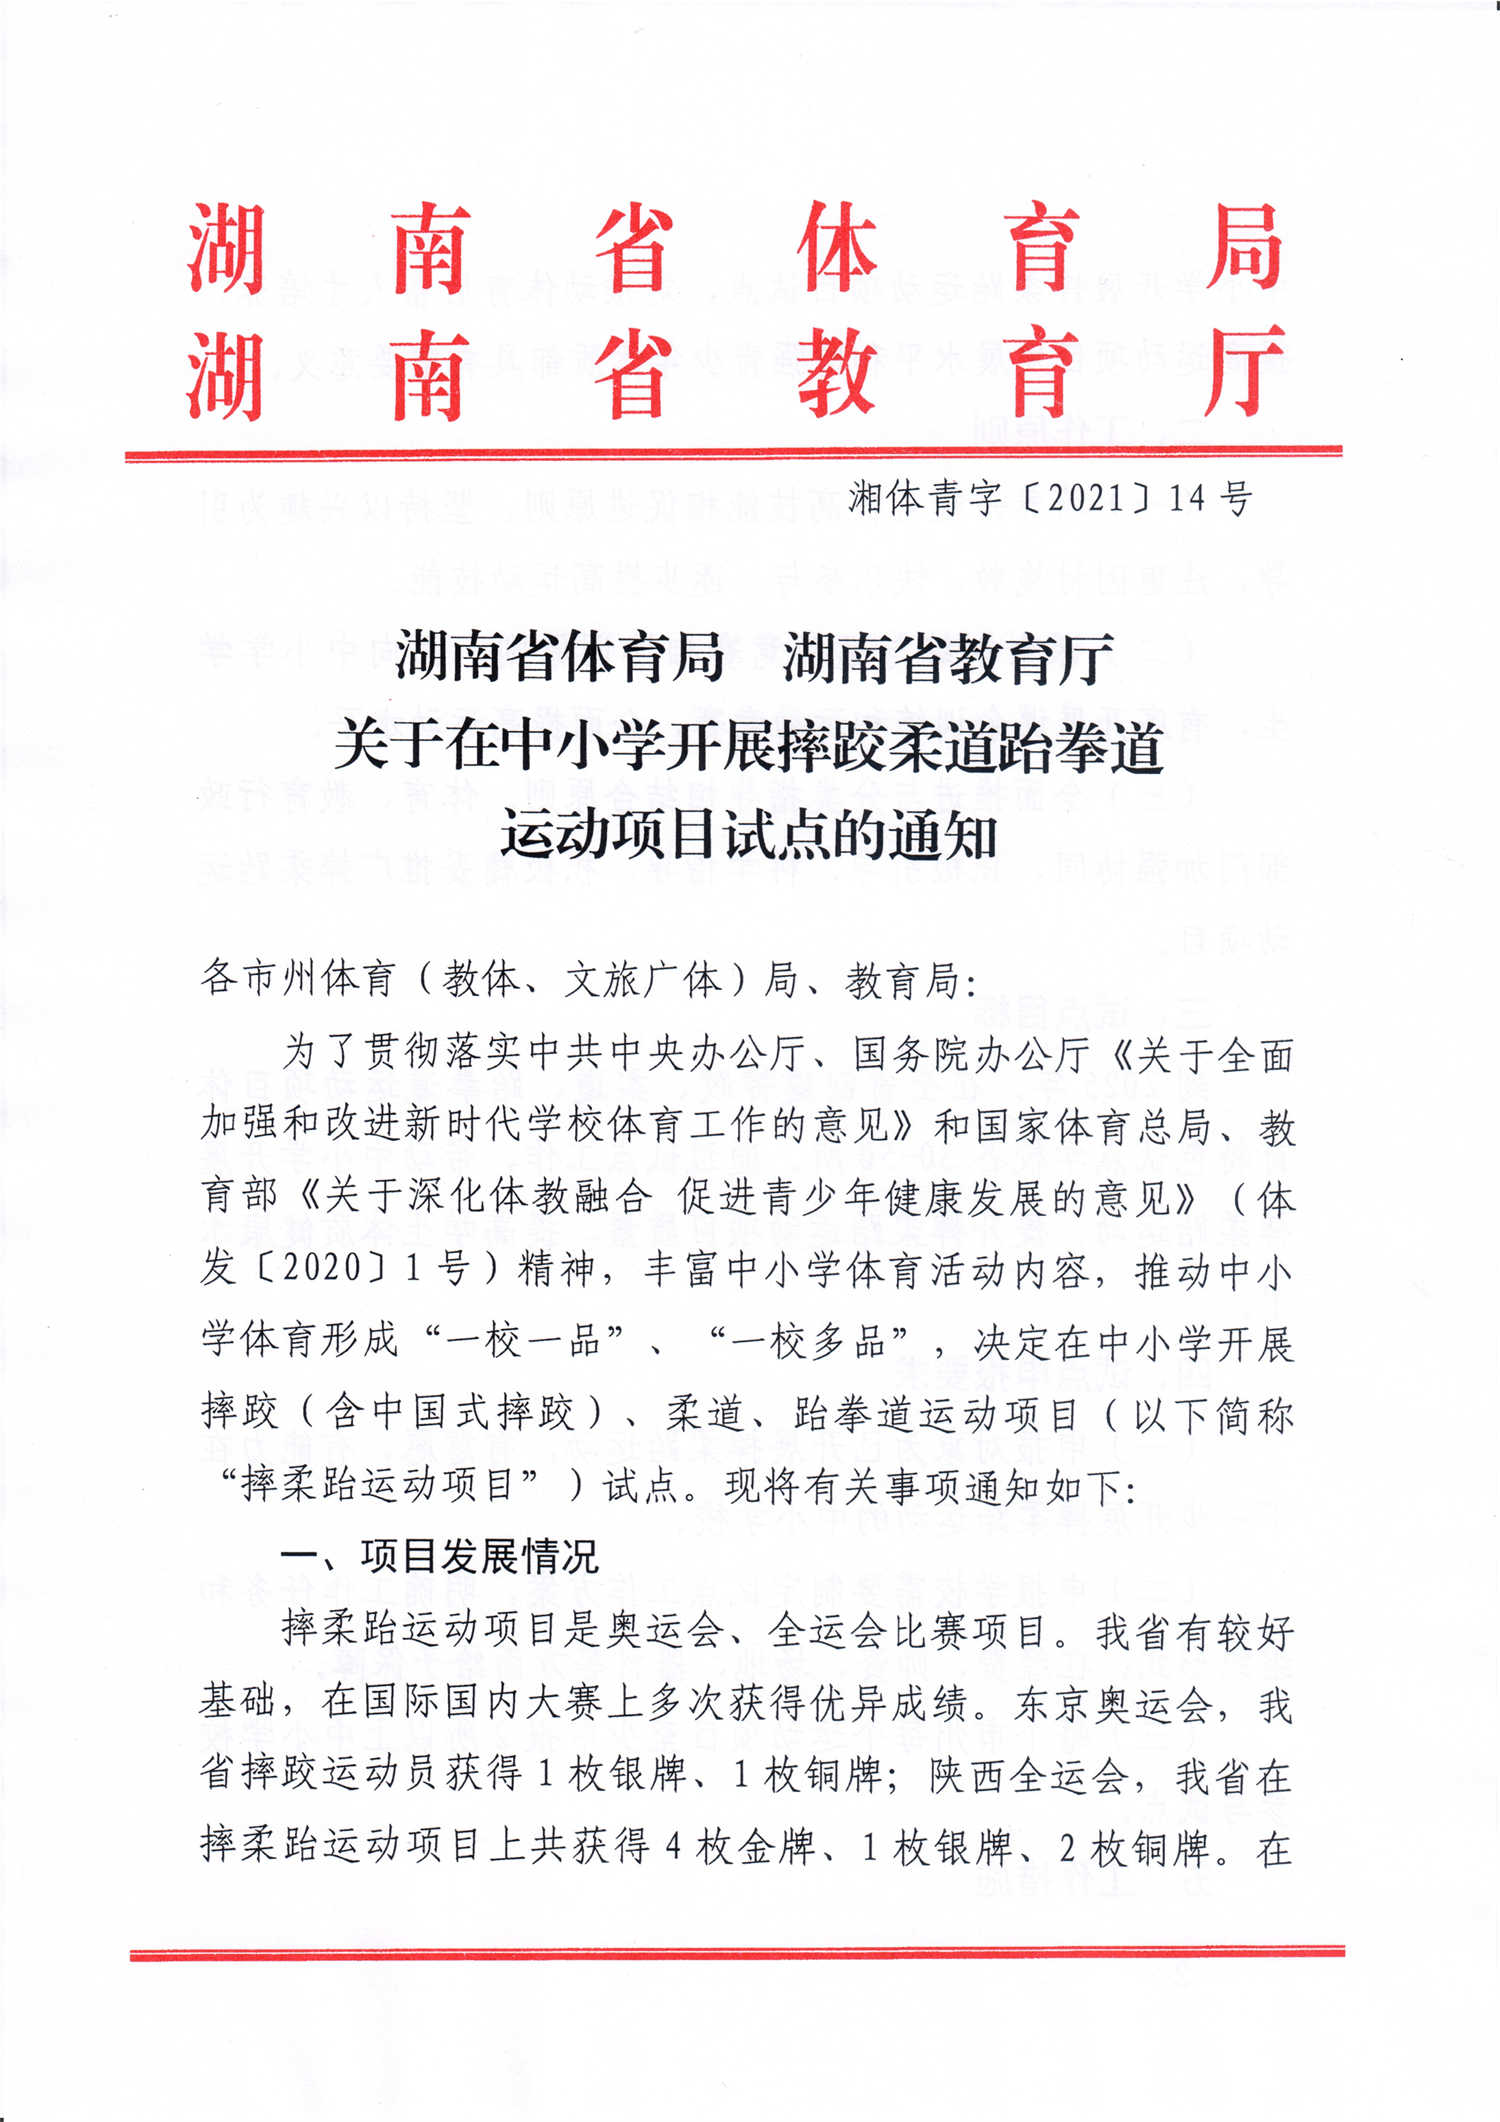 湖南省体育局 湖南省教育厅关于在中小学开展摔跤柔道跆拳道运动项目试点的通知